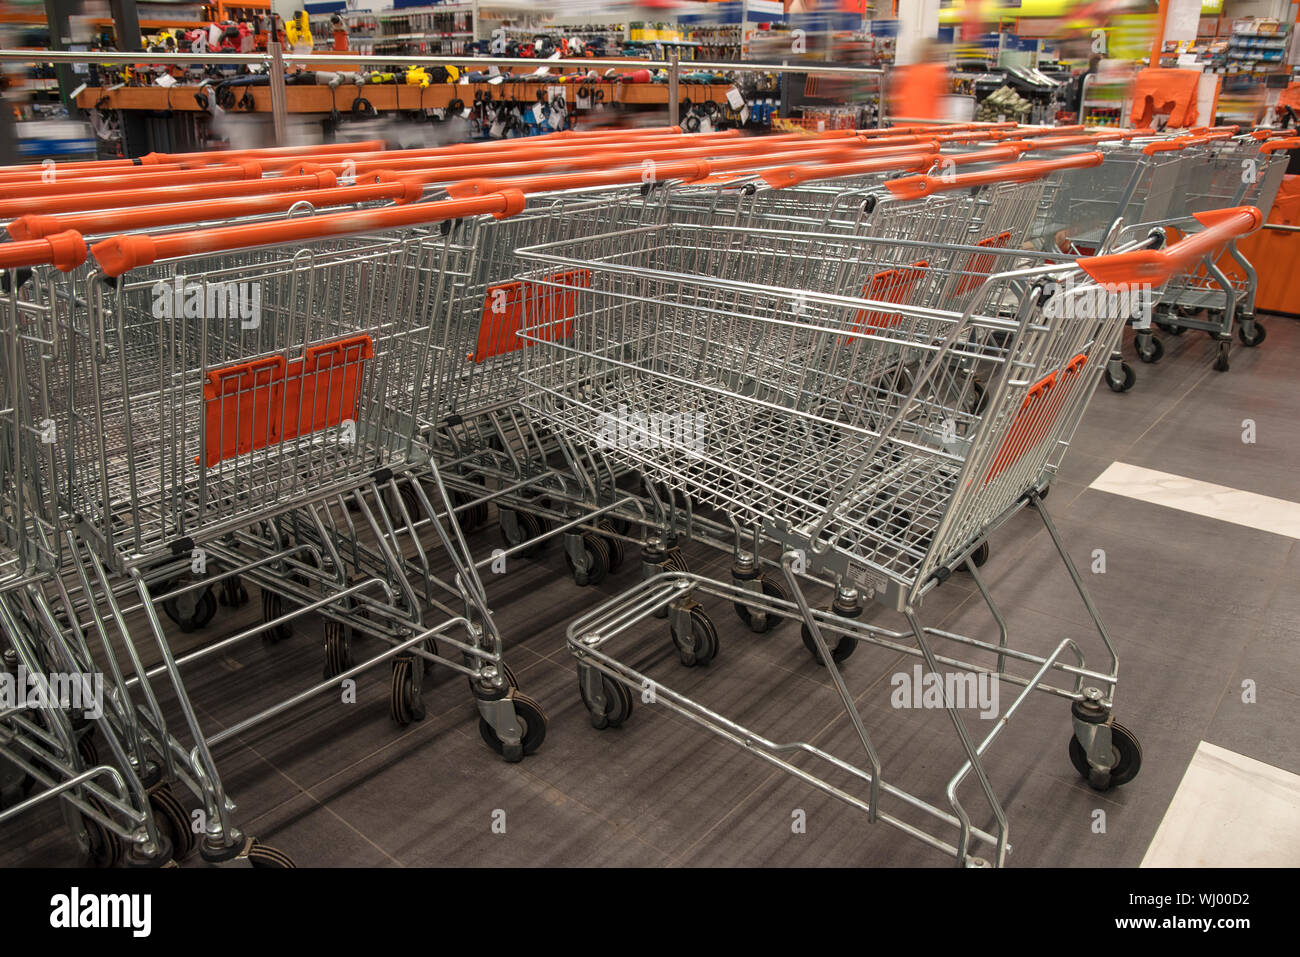 Carros De La Compra Del Supermercado En Fila En El Estacionamiento Grande  De La Tienda Del Supermercado Imagen de archivo - Imagen de equipo, carro:  128755719